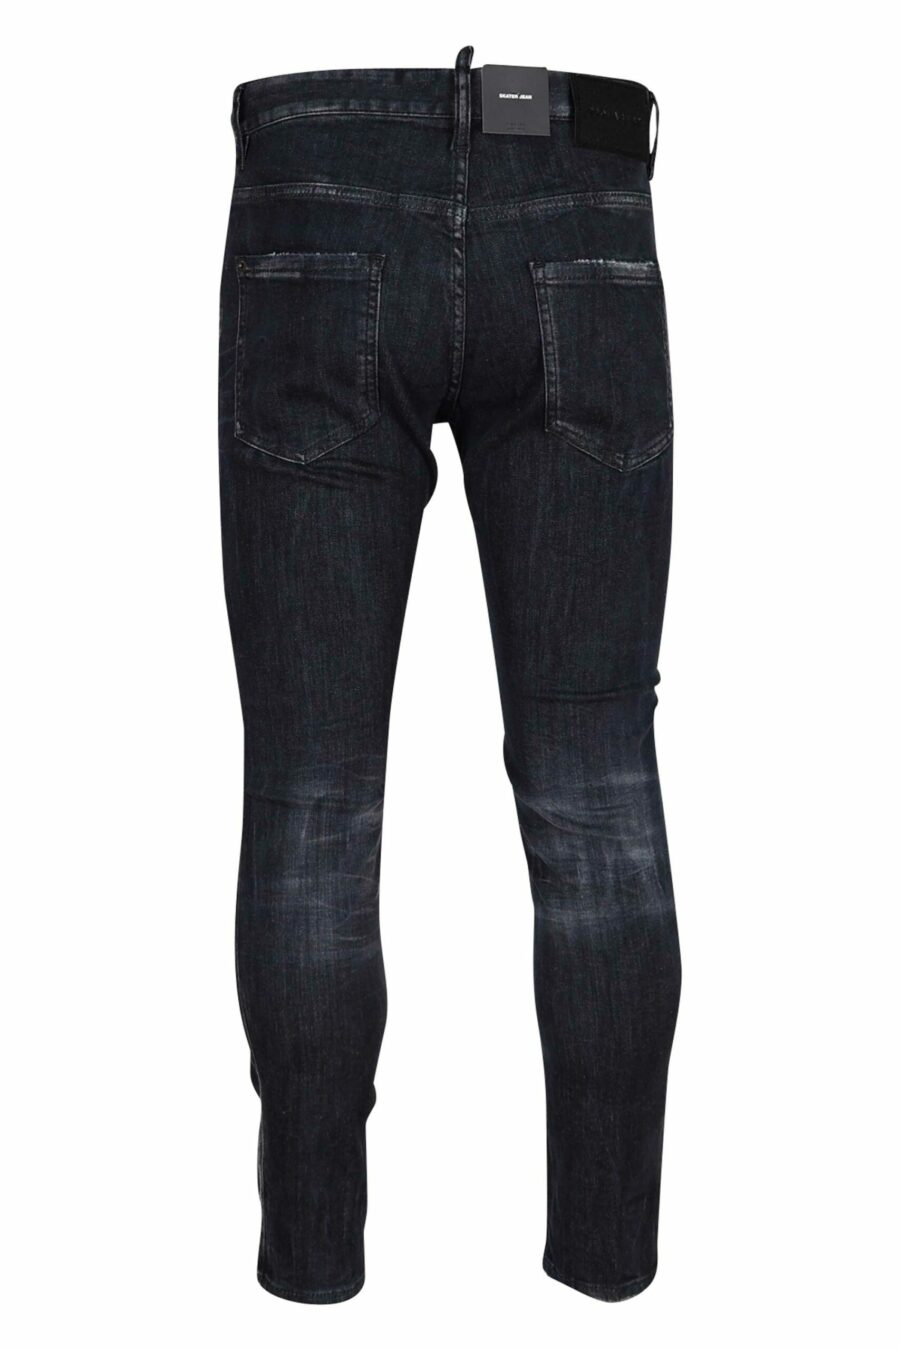 Jeans "skater jean" noir semi-usé - 8054148289591 2 échelles